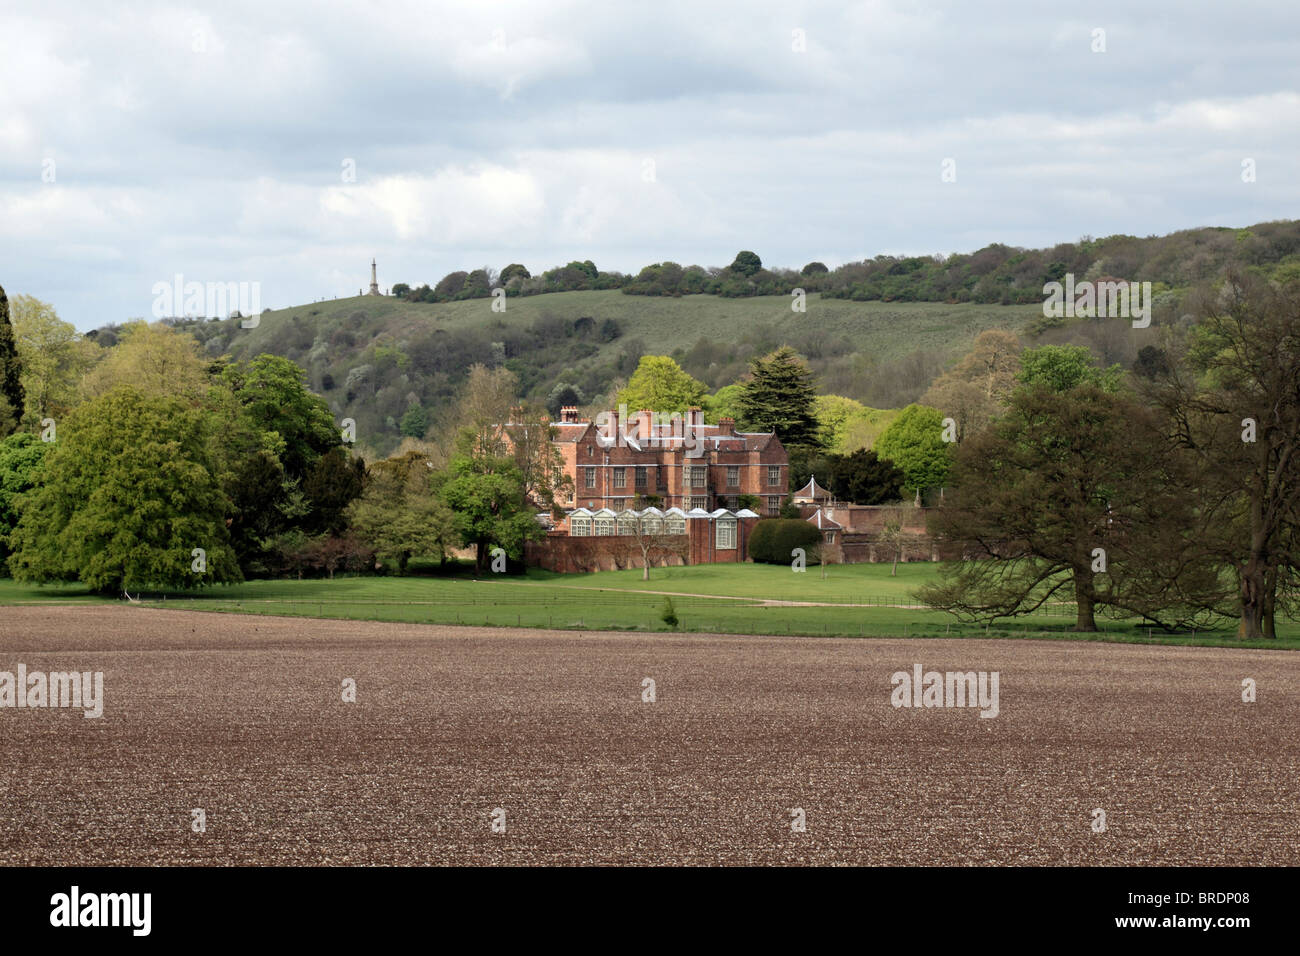 Blick über ein leeres Feld in Richtung Chequers (Chequers Court), der Landsitz des Premierministers des Vereinigten Königreichs. Stockfoto